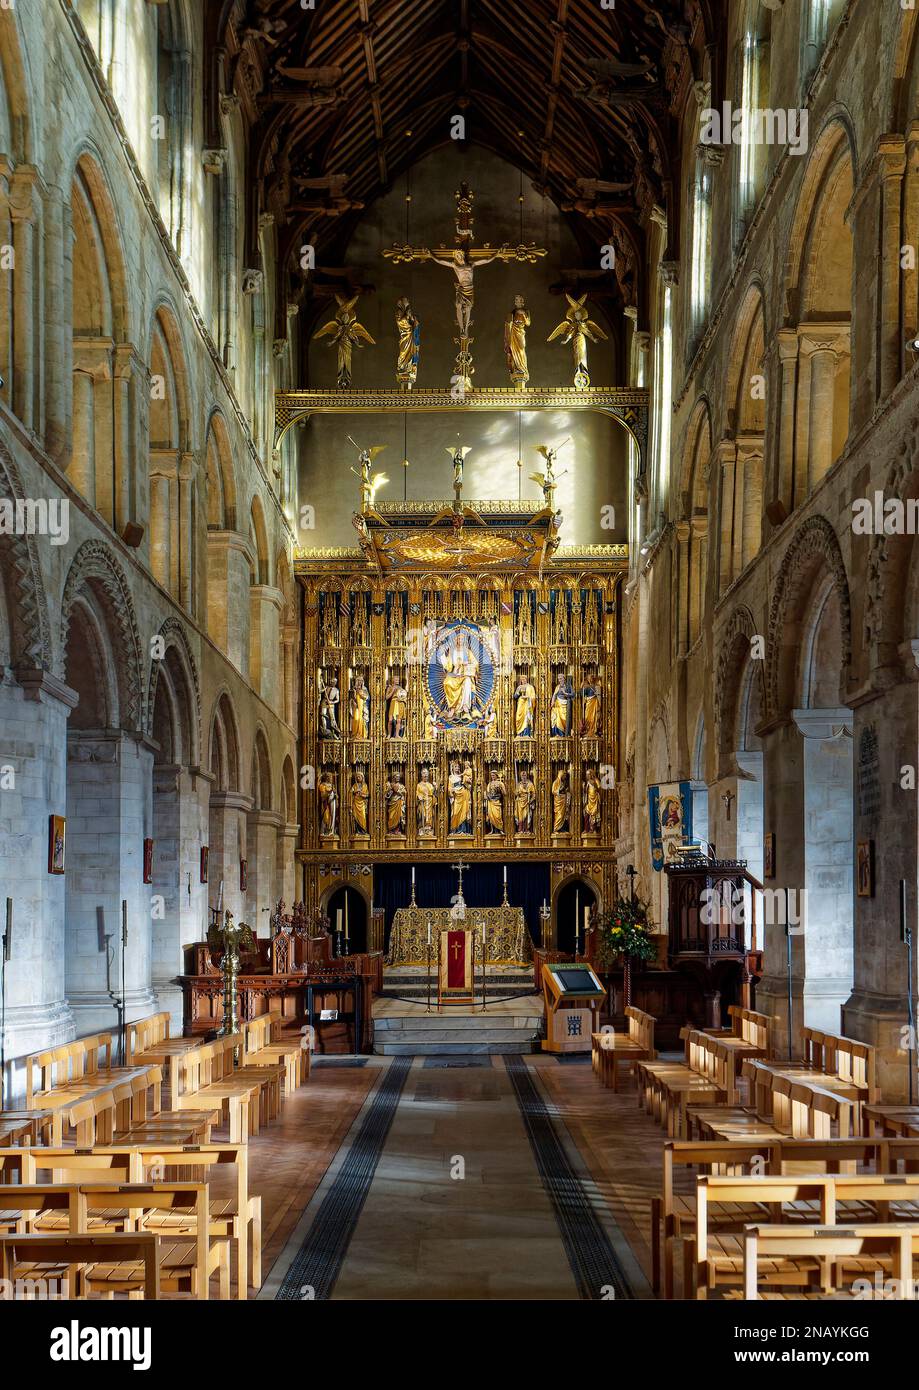 La nef et le choeur de l'abbaye de Wymondham à Norfolk montrant l'architecture normande et le mémorial de guerre de WW1, des reliedos dorés ou un écran d'autel. Banque D'Images